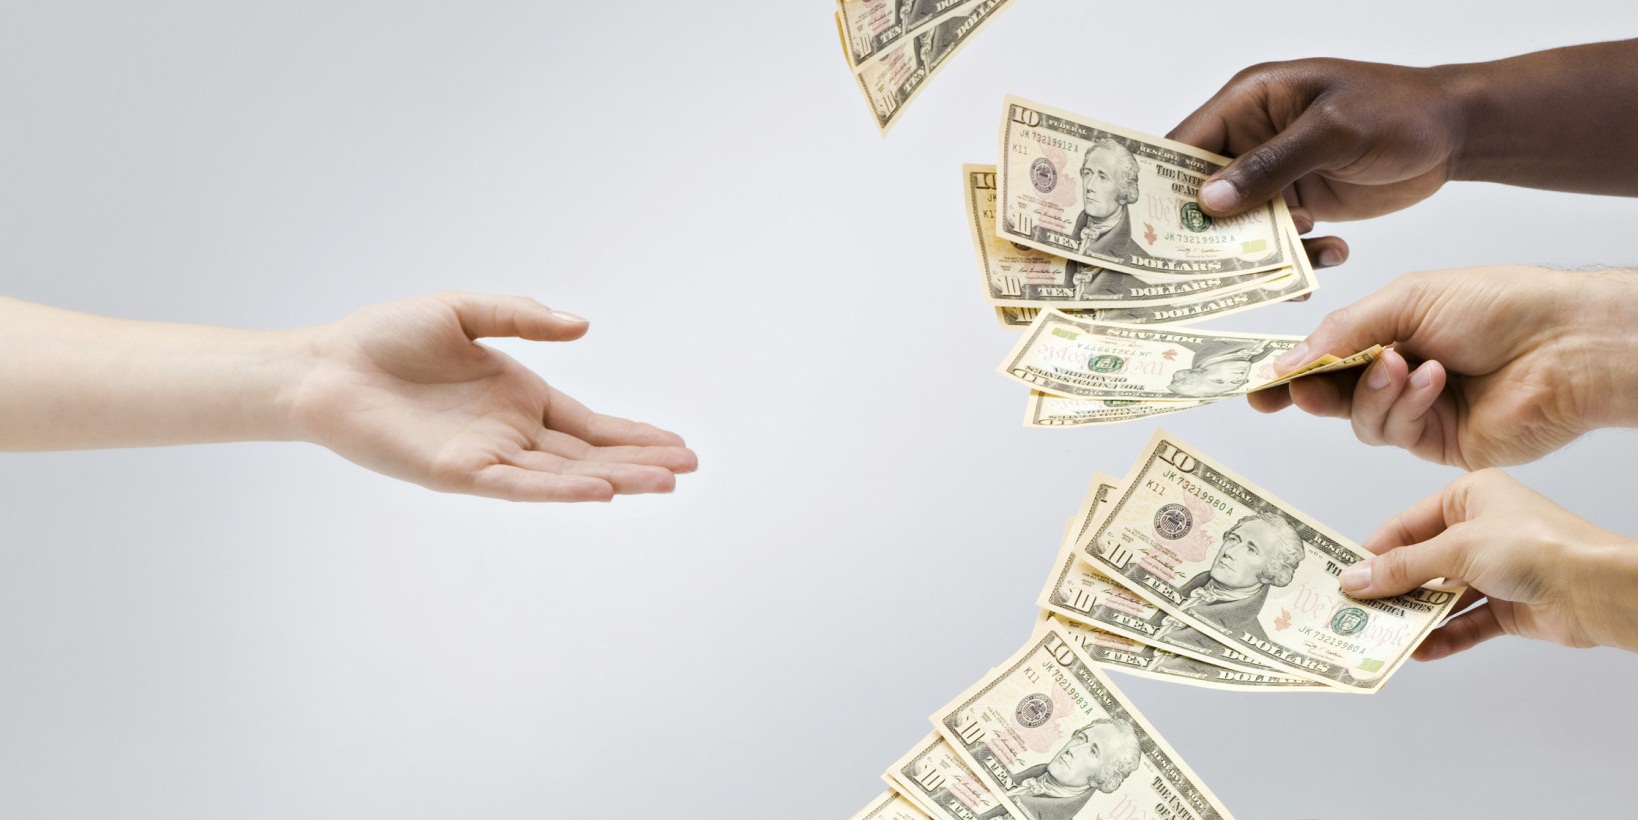 5 Bí quyết giúp bạn gây vốn thông qua Crowdfunding